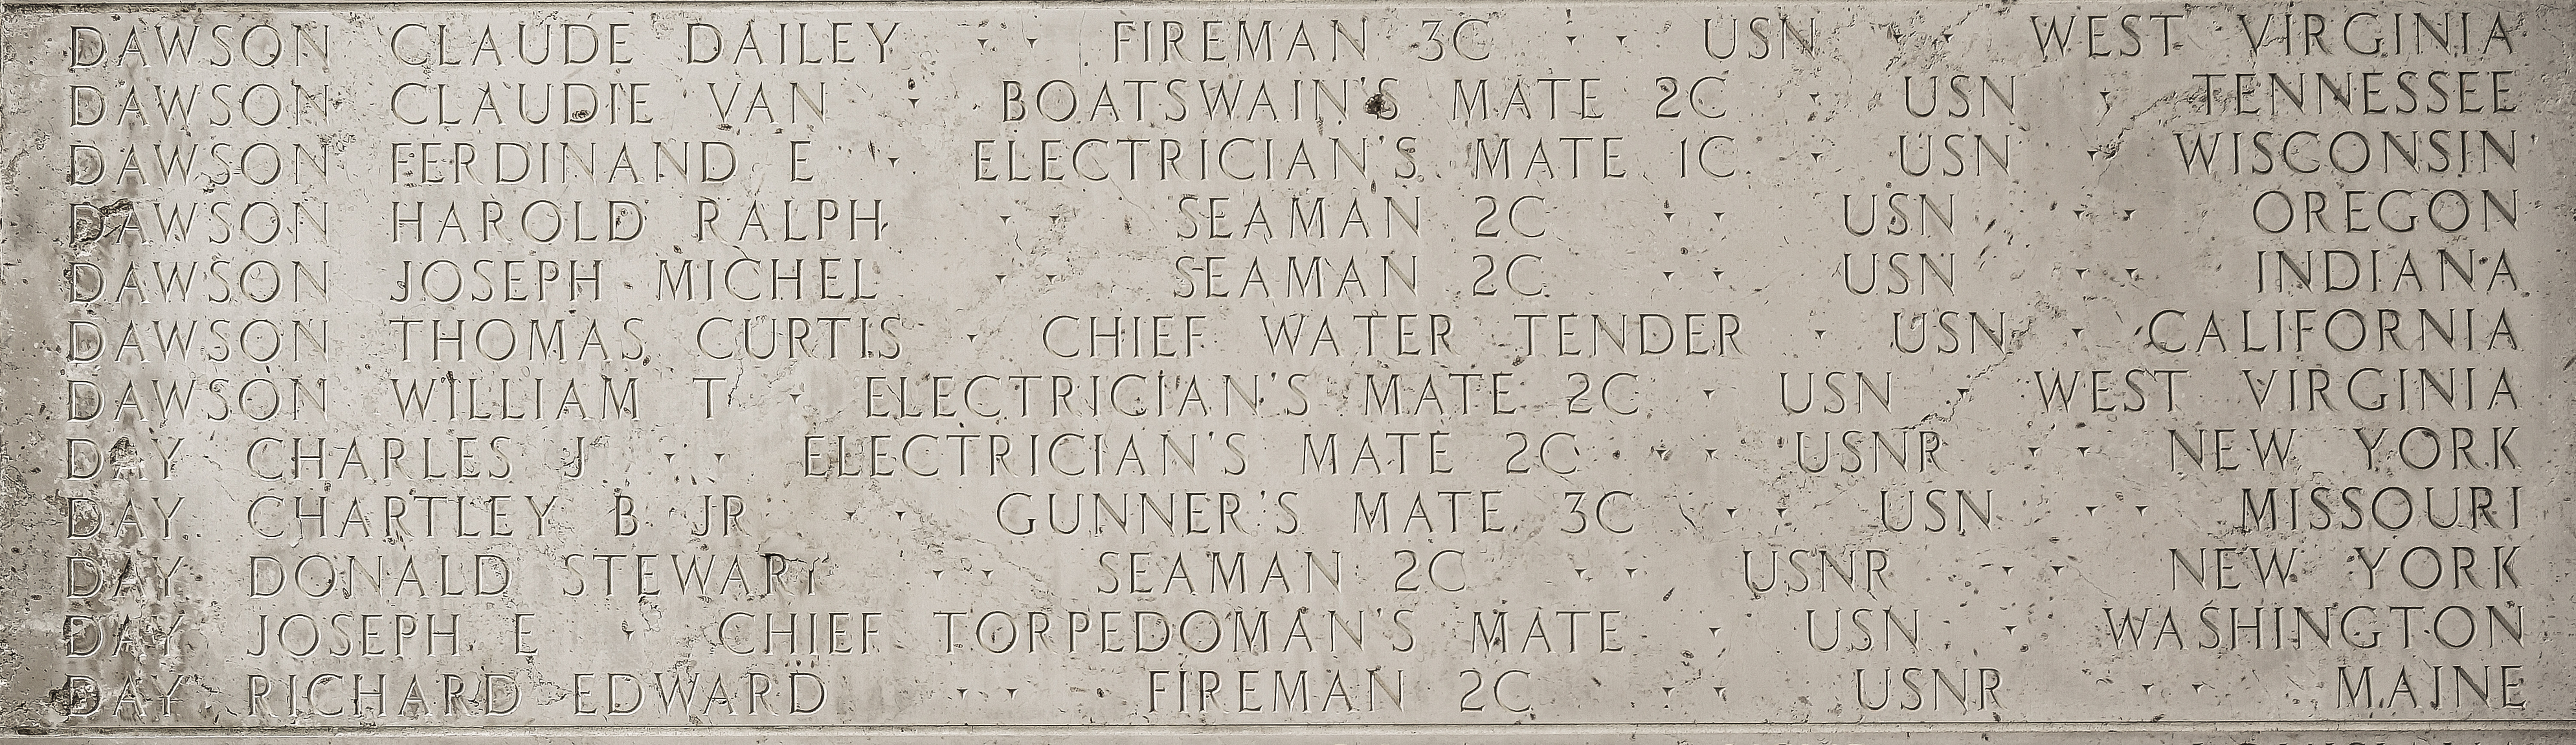 Joseph E. Day, Chief Torpedoman's Mate